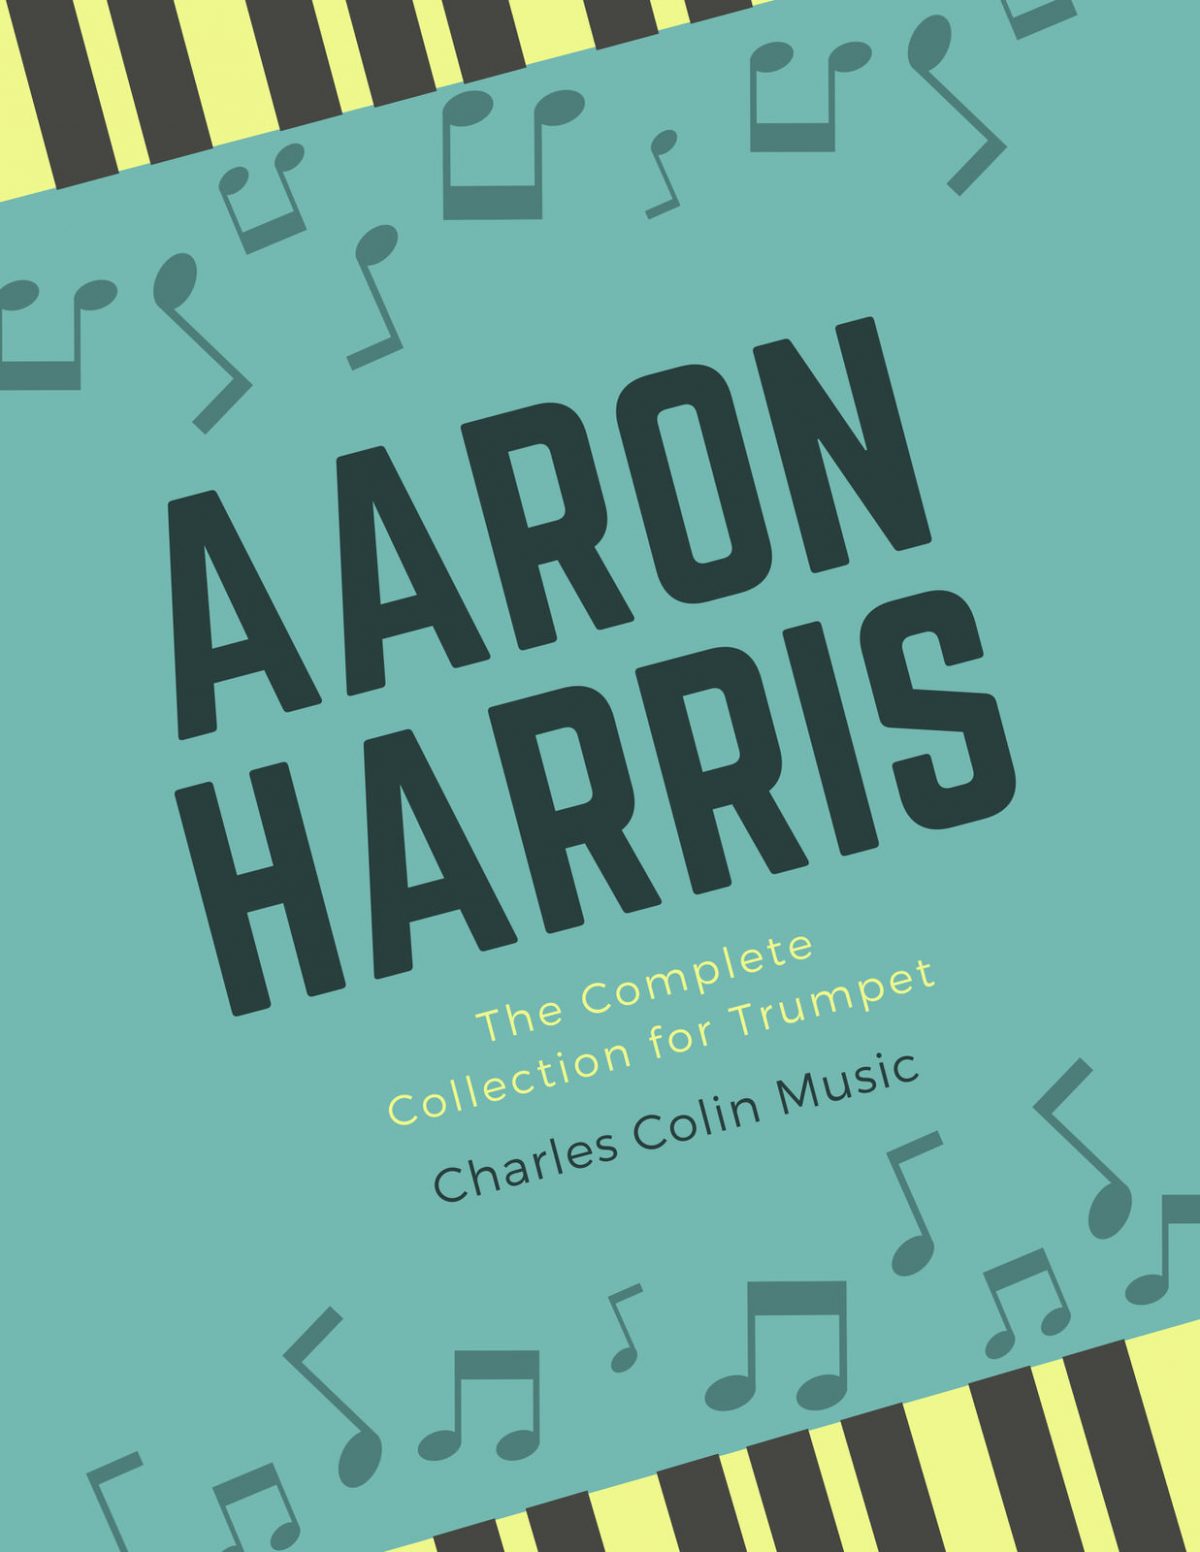 Complete Aaron Harris Trumpet